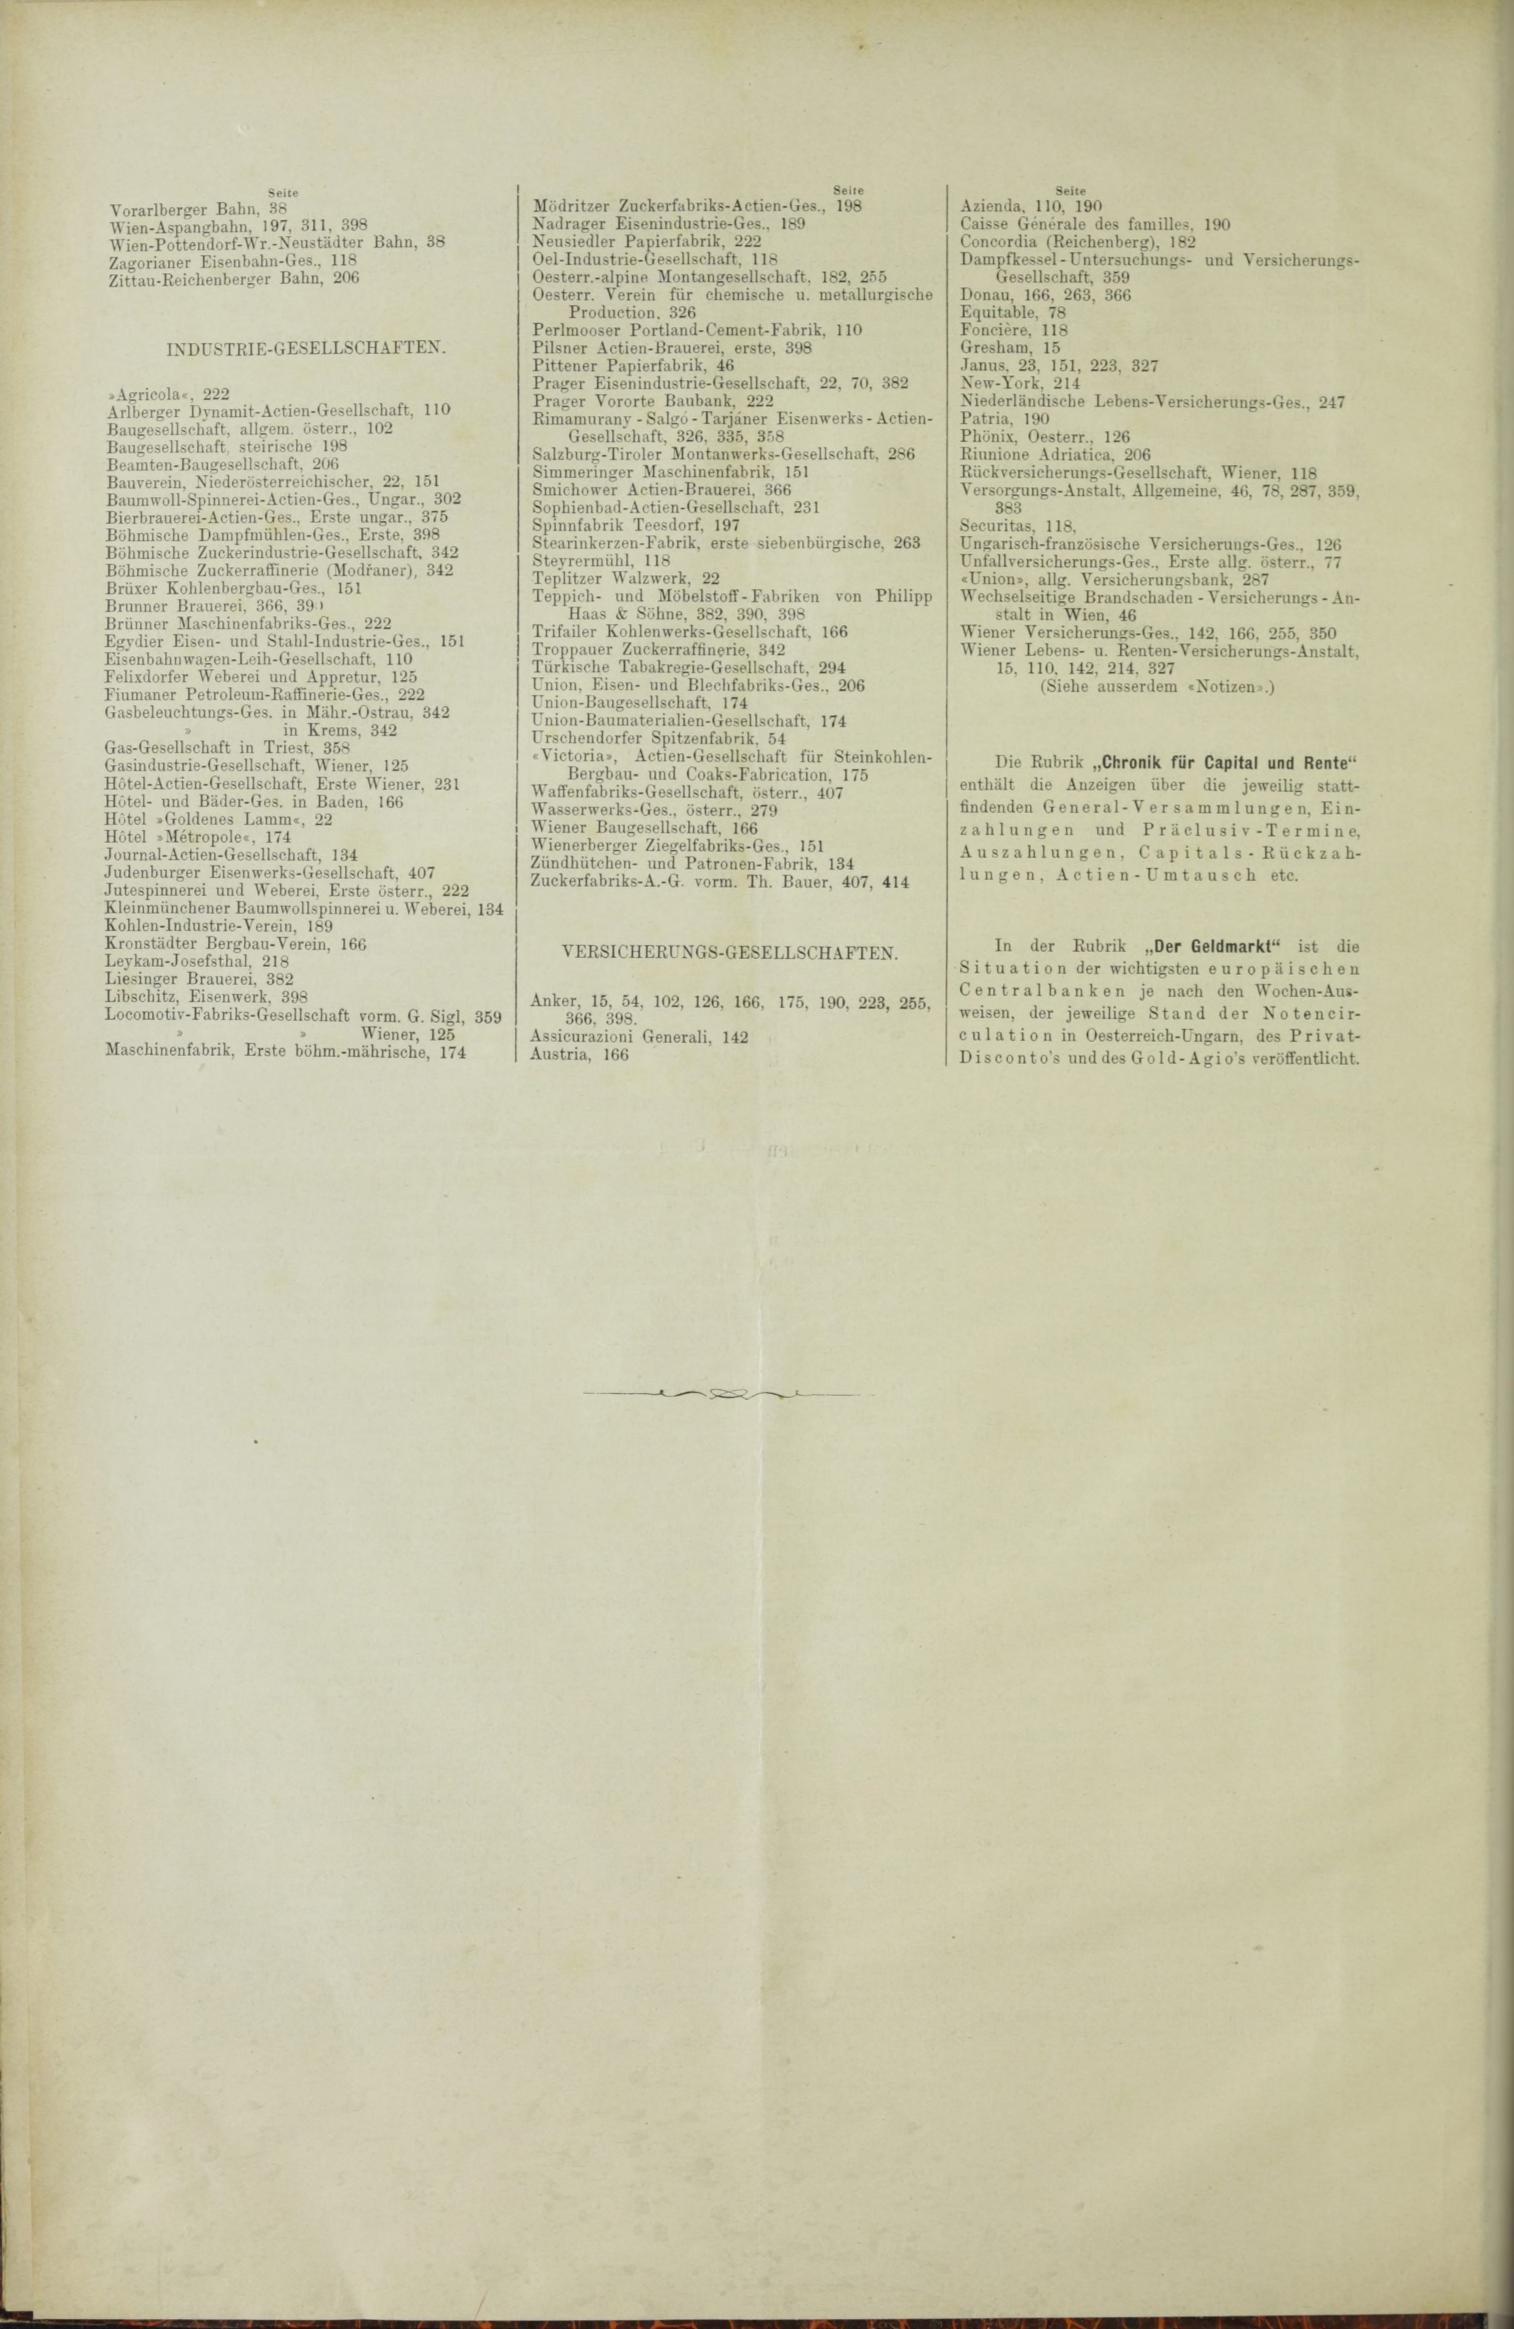 Der Tresor 01.04.1886 - Seite 12